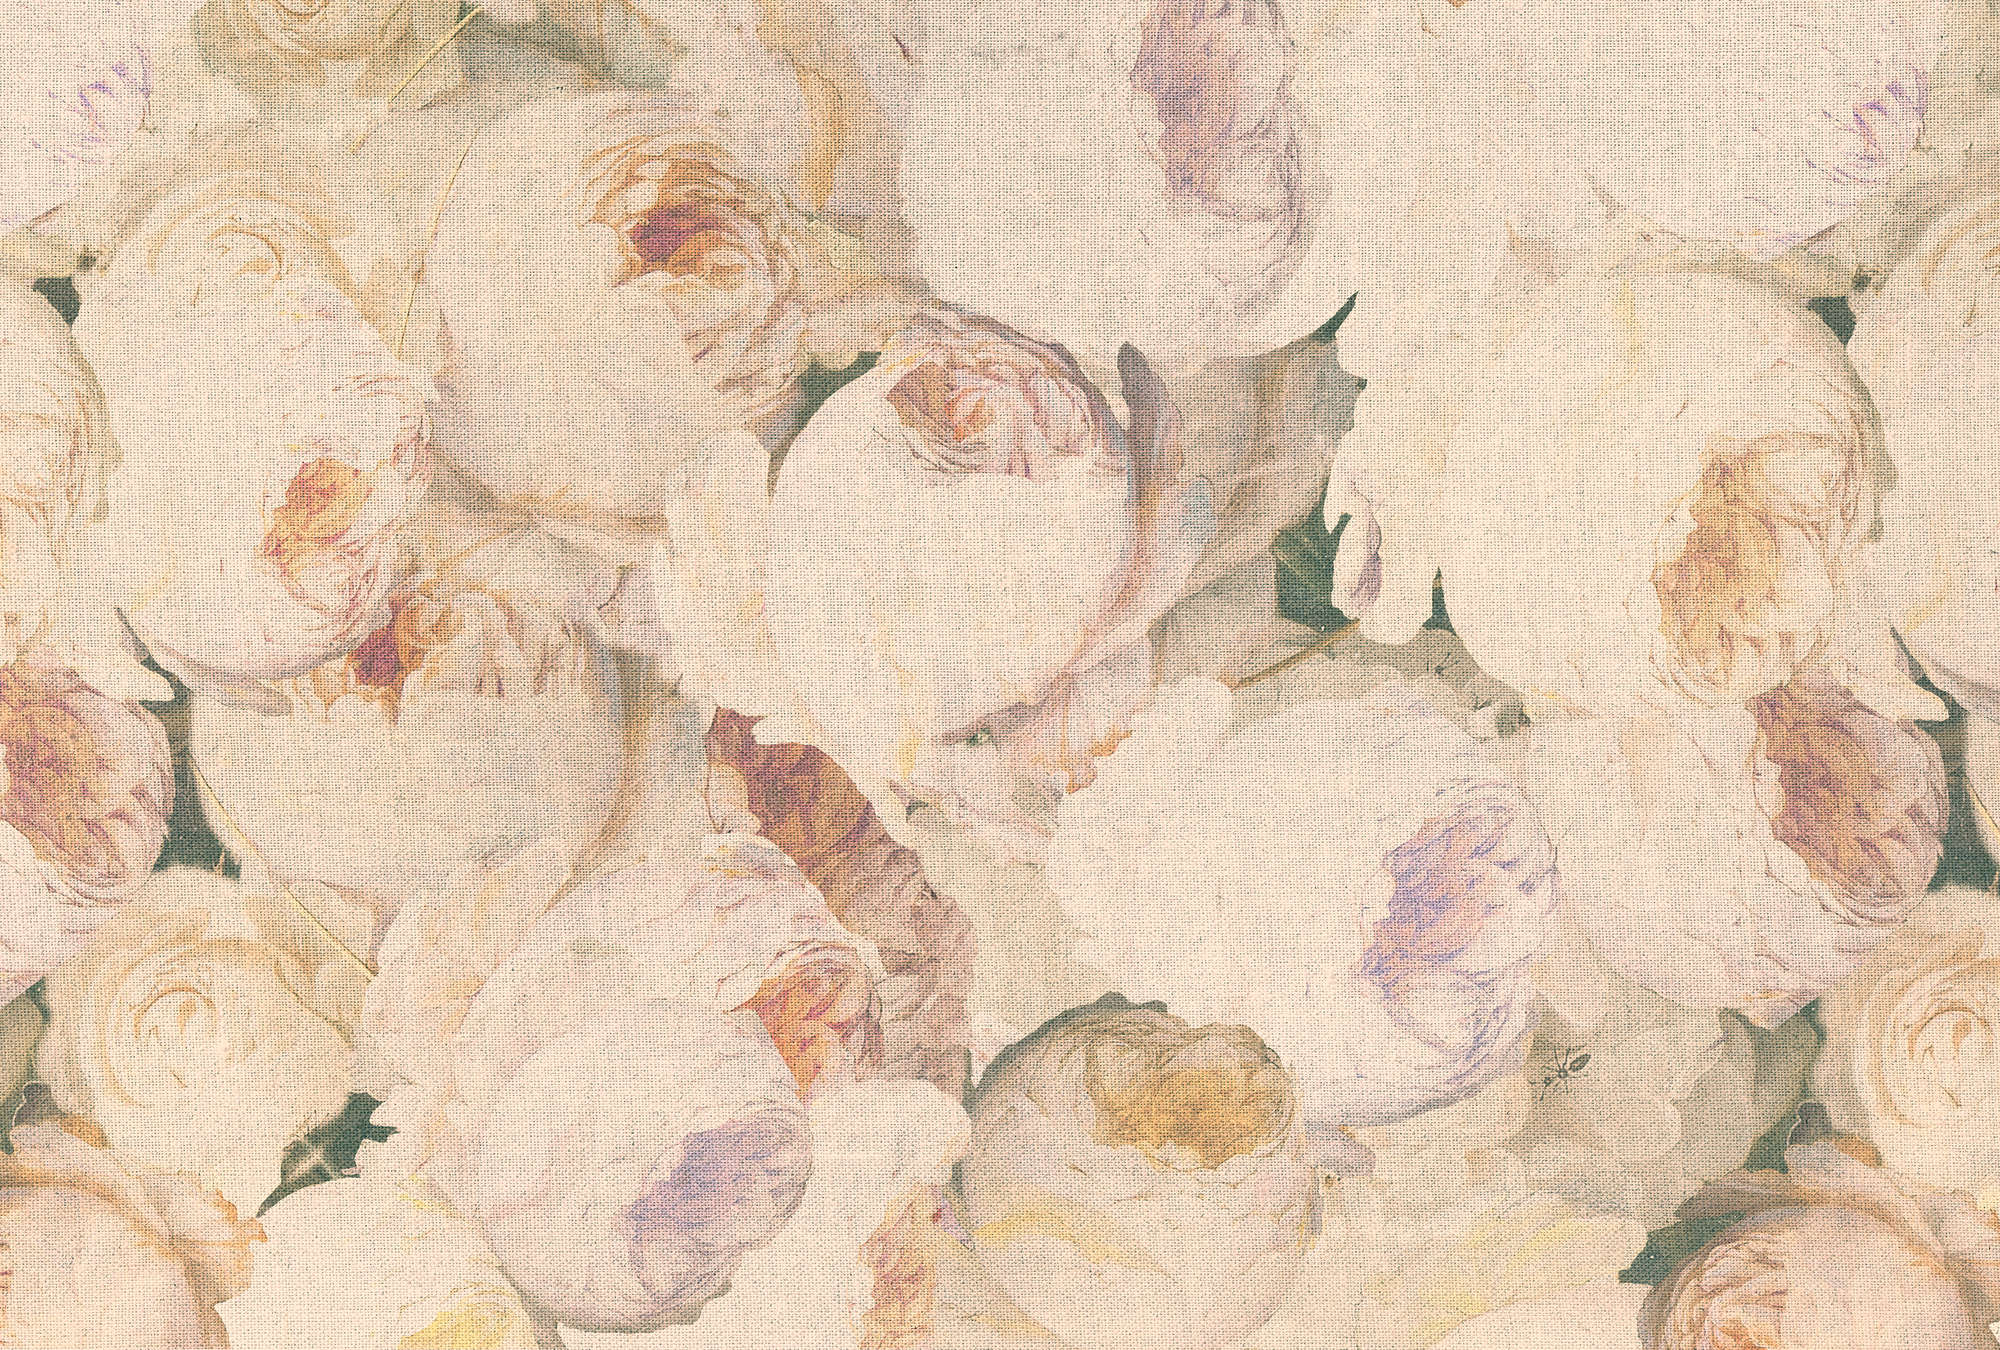             Papier peint Roses, fleurs & aspect lin - crème, rose
        